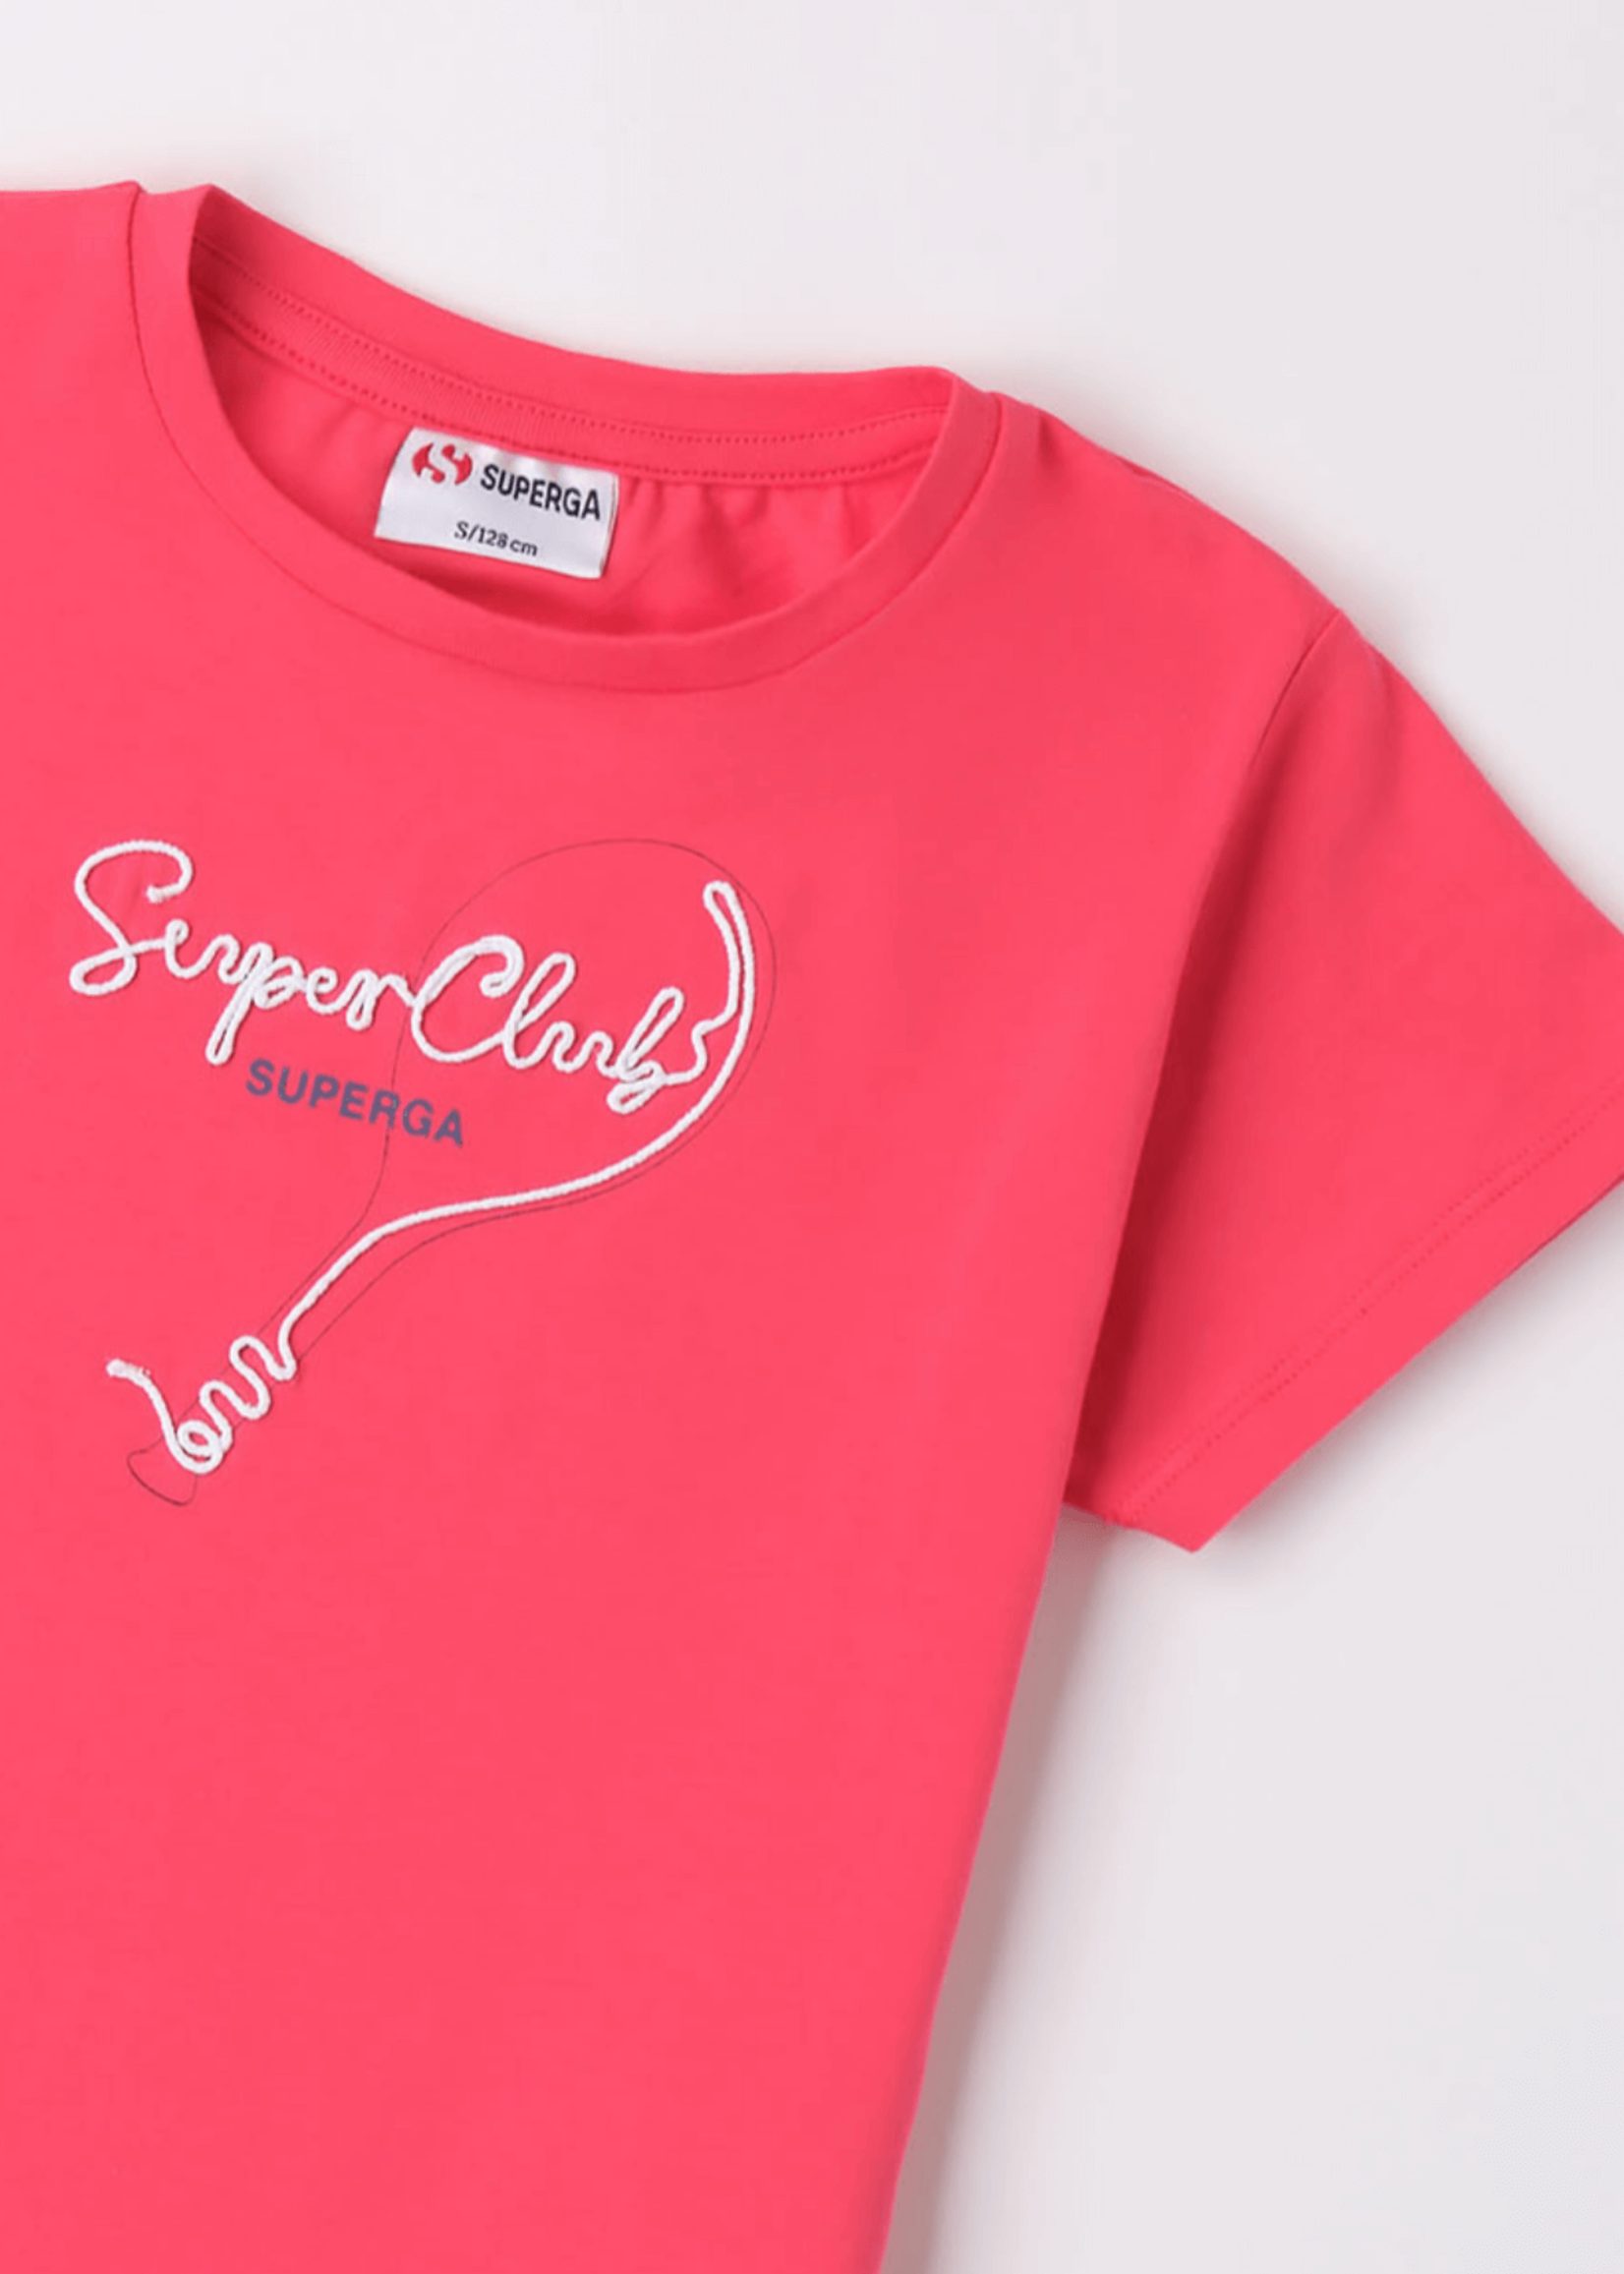 Superga Super Club T-shirt Coral